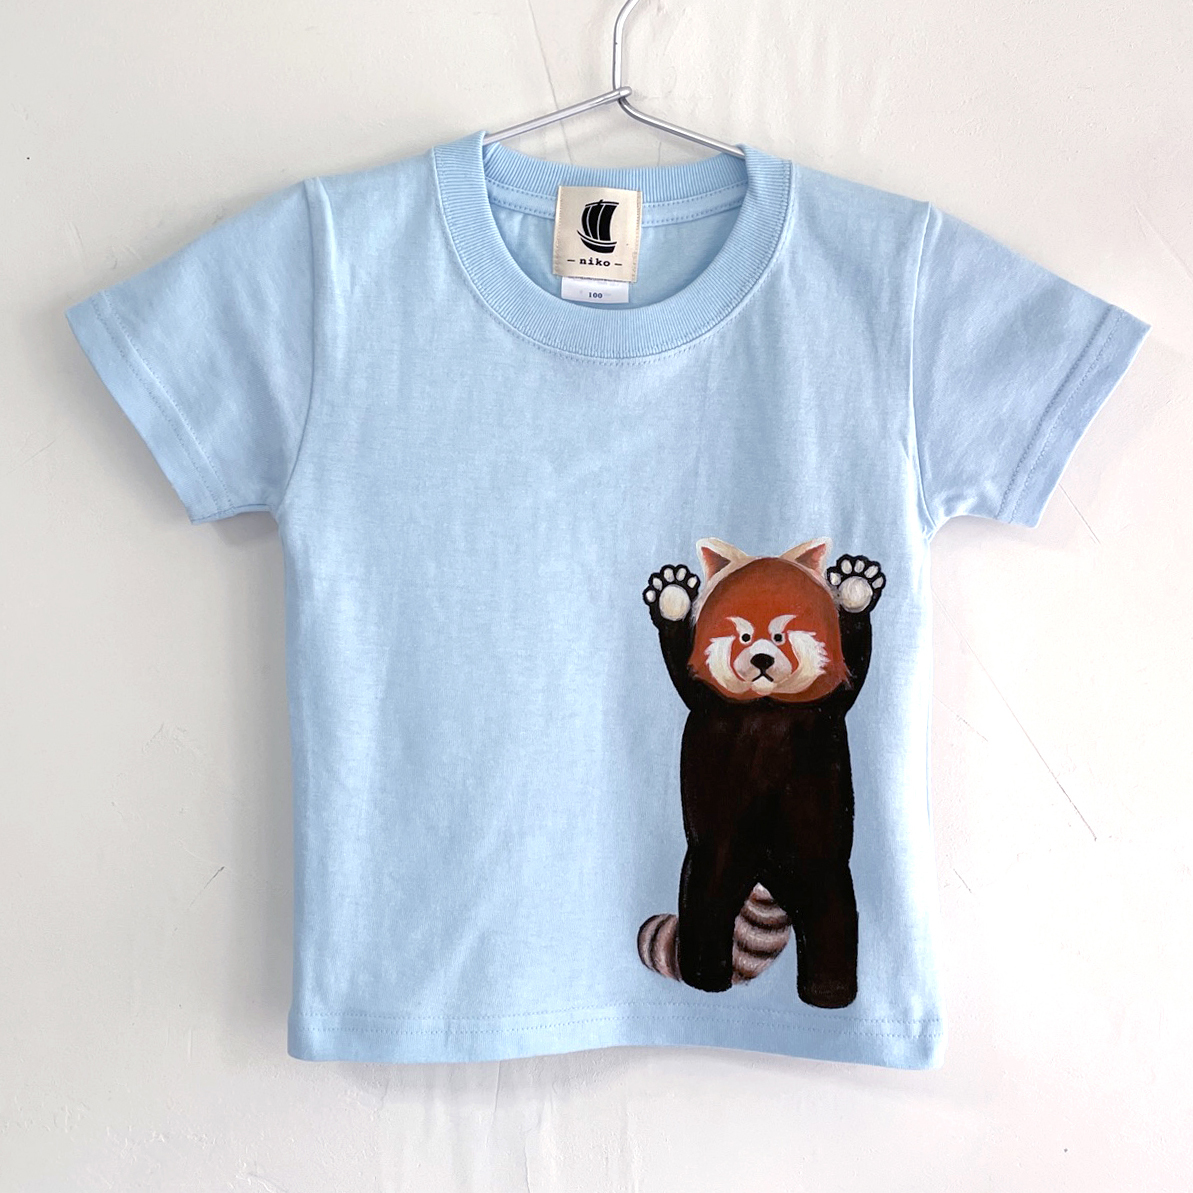 Kinder T-Shirt, Größe 110, Blau, T-Shirt mit rotem Panda-Print, handgefertigt, handgezeichnetes T-Shirt, Tier, Spitzen, Kurzärmeliges T-shirt, 110 (105~114 cm)